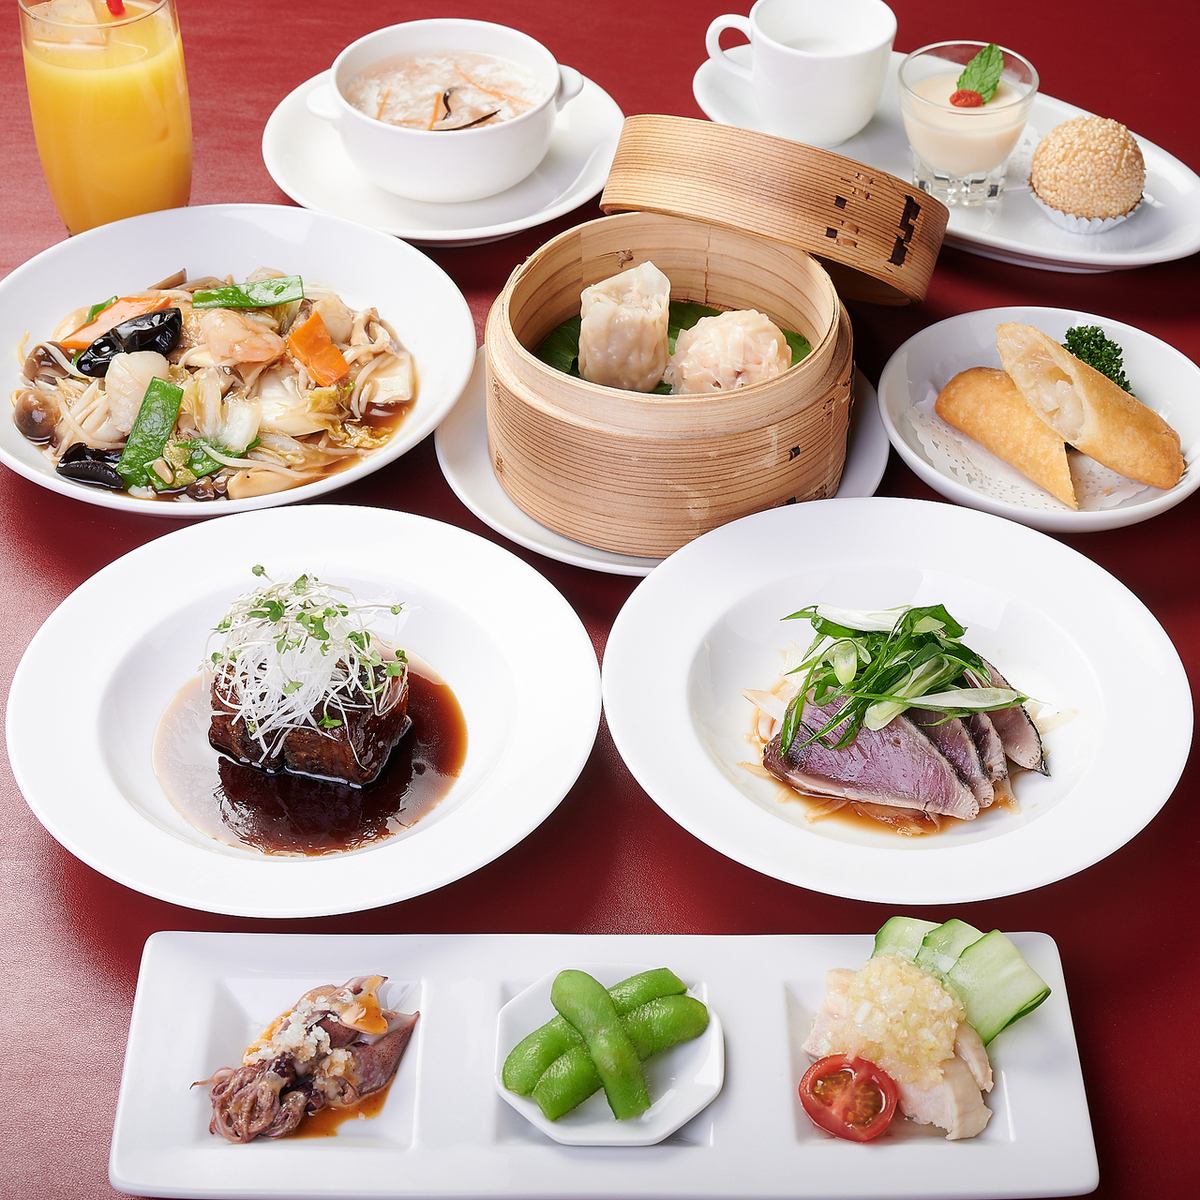 広東料理と和食のボーダレス料理をランチでもお楽しみください。